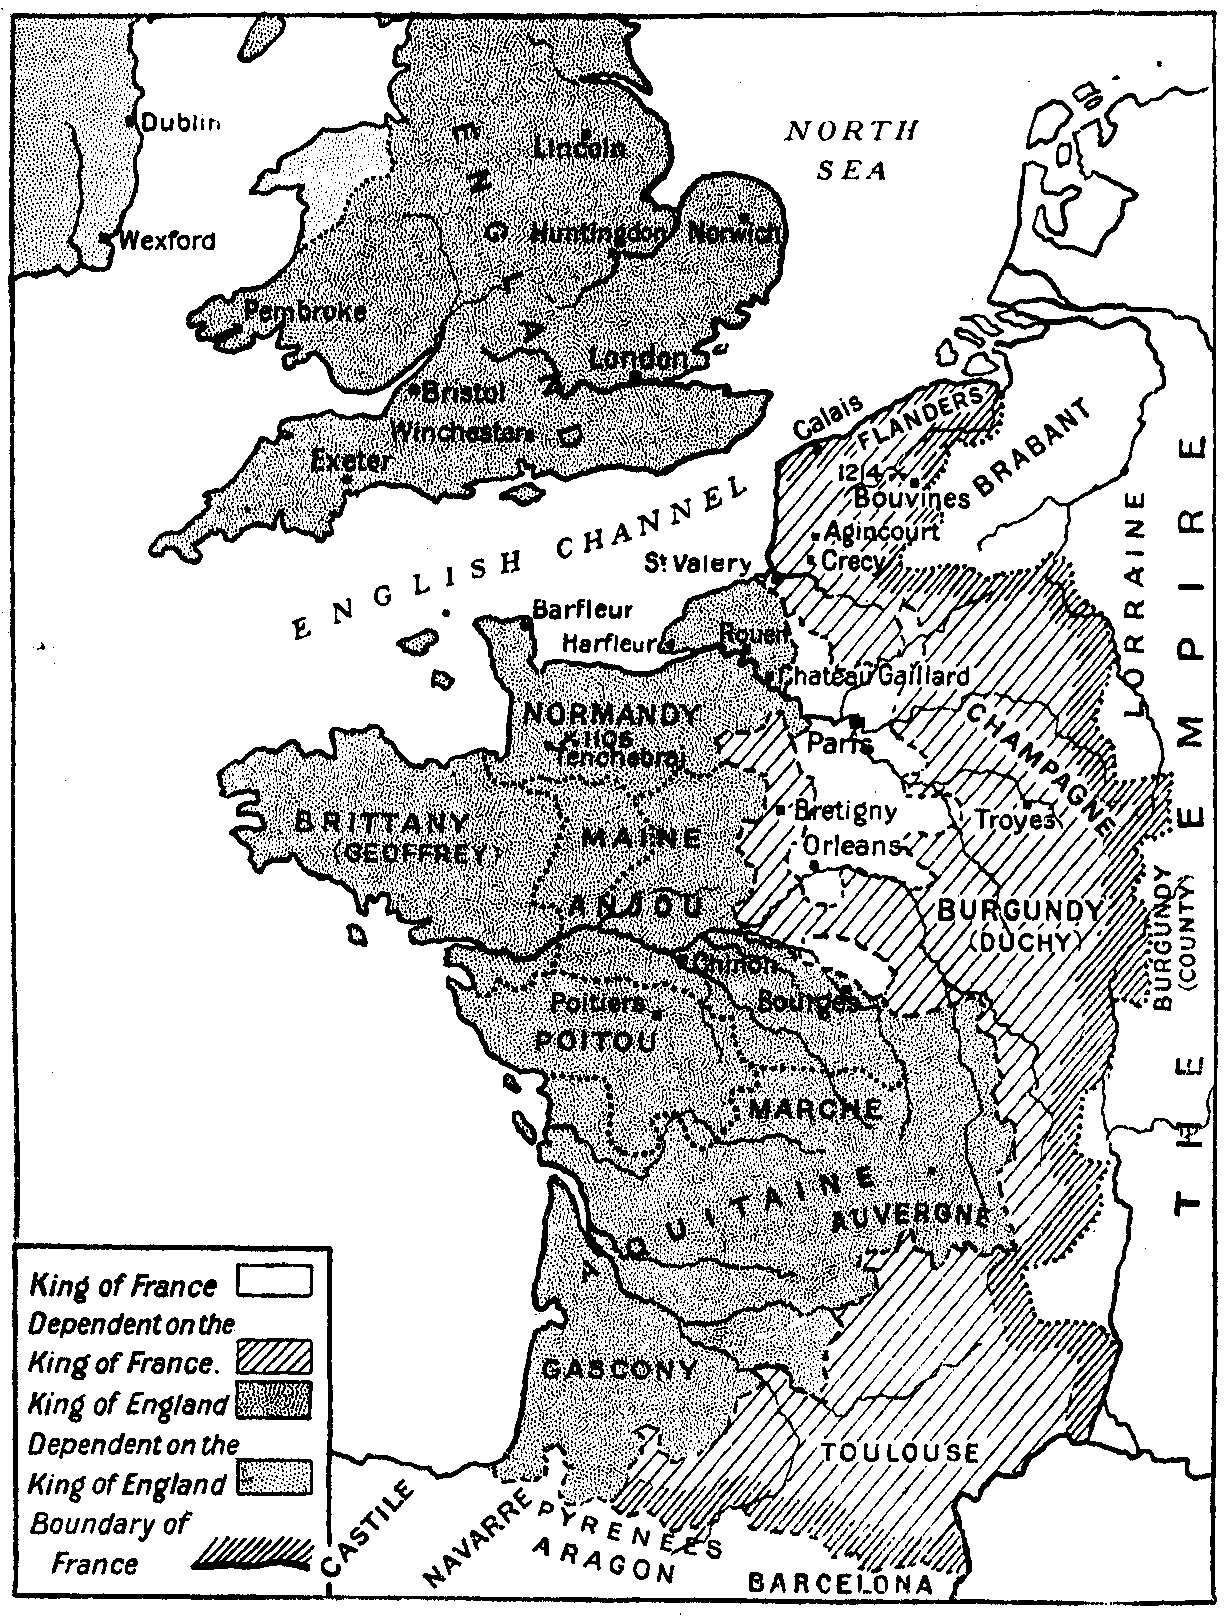 France 1050 A.D.